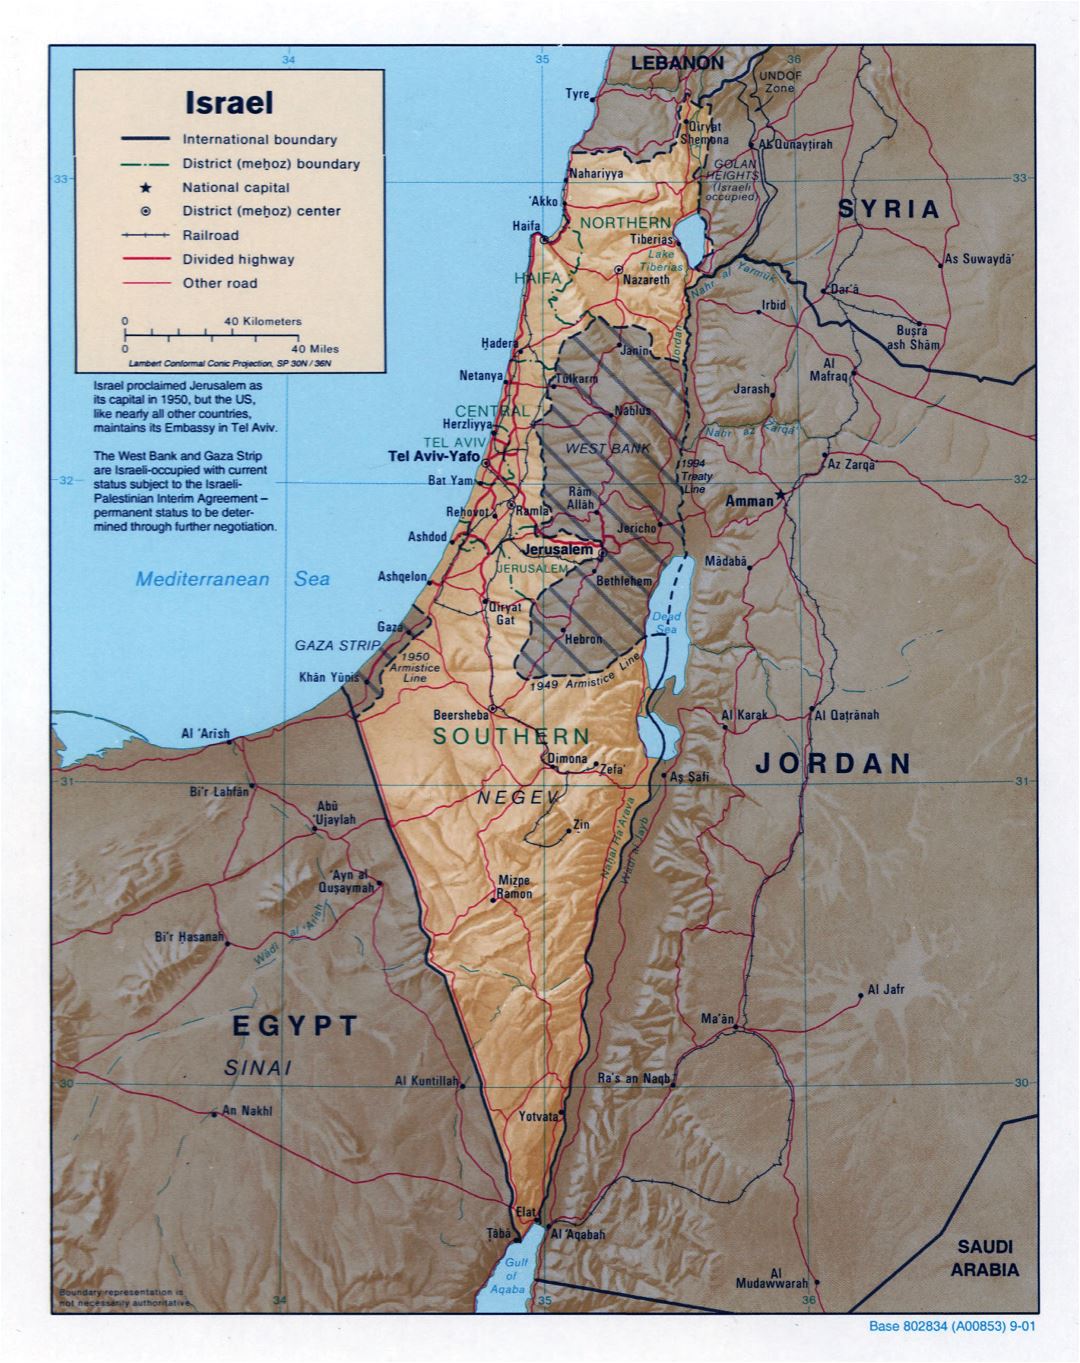 Grande detallado mapa político y administrativo de Israel con socorro, carreteras, ferrocarriles y principales ciudades - 2001